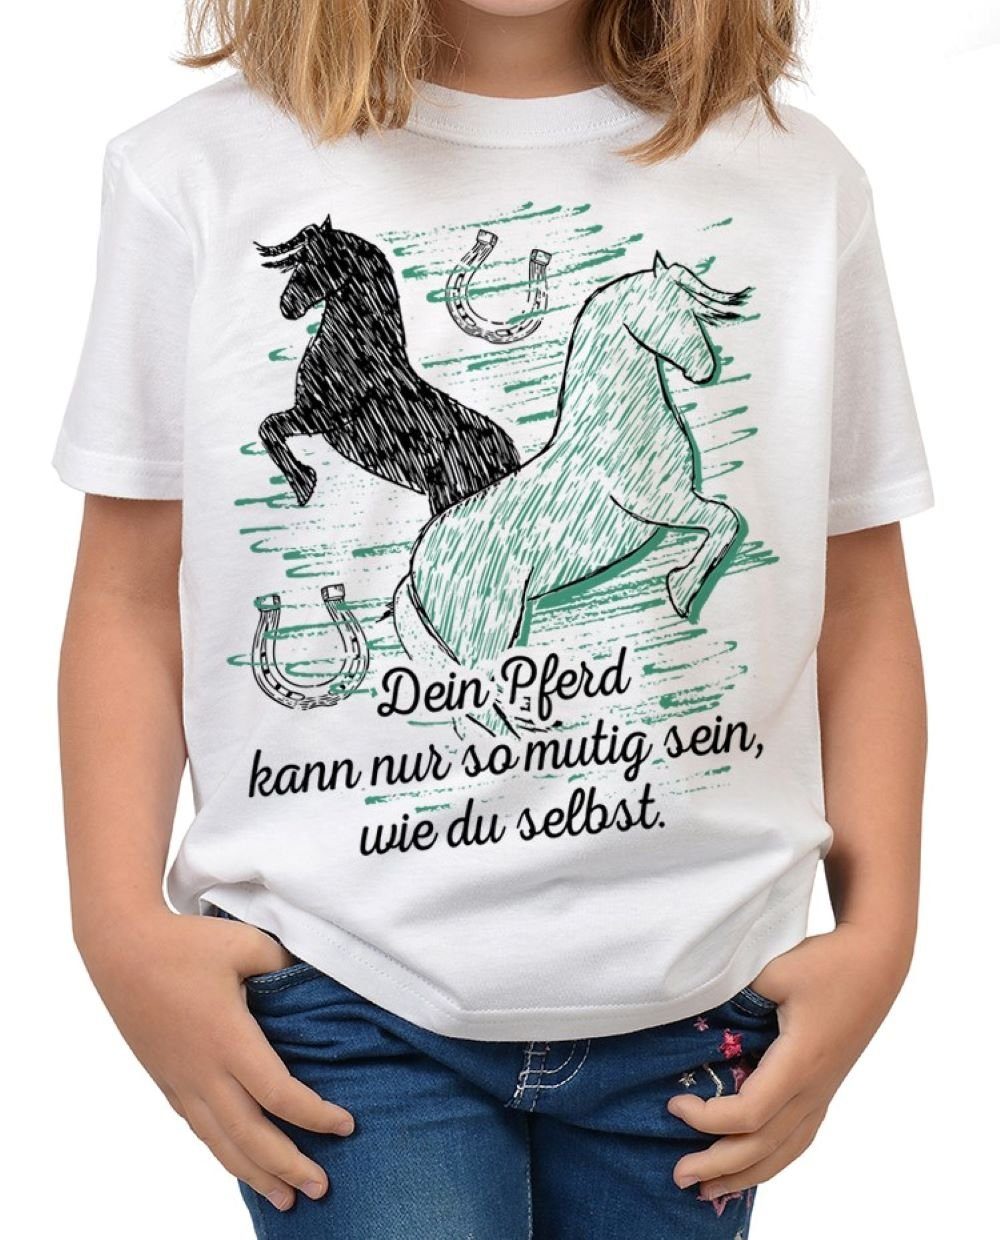 Tini - Shirts T-Shirt Kinder selbst Pferde so Pferd mutig Dein sein, Motiv wie kann du Shirt Sprüche Pferde Sprüche Shirt nur Kindershirt 